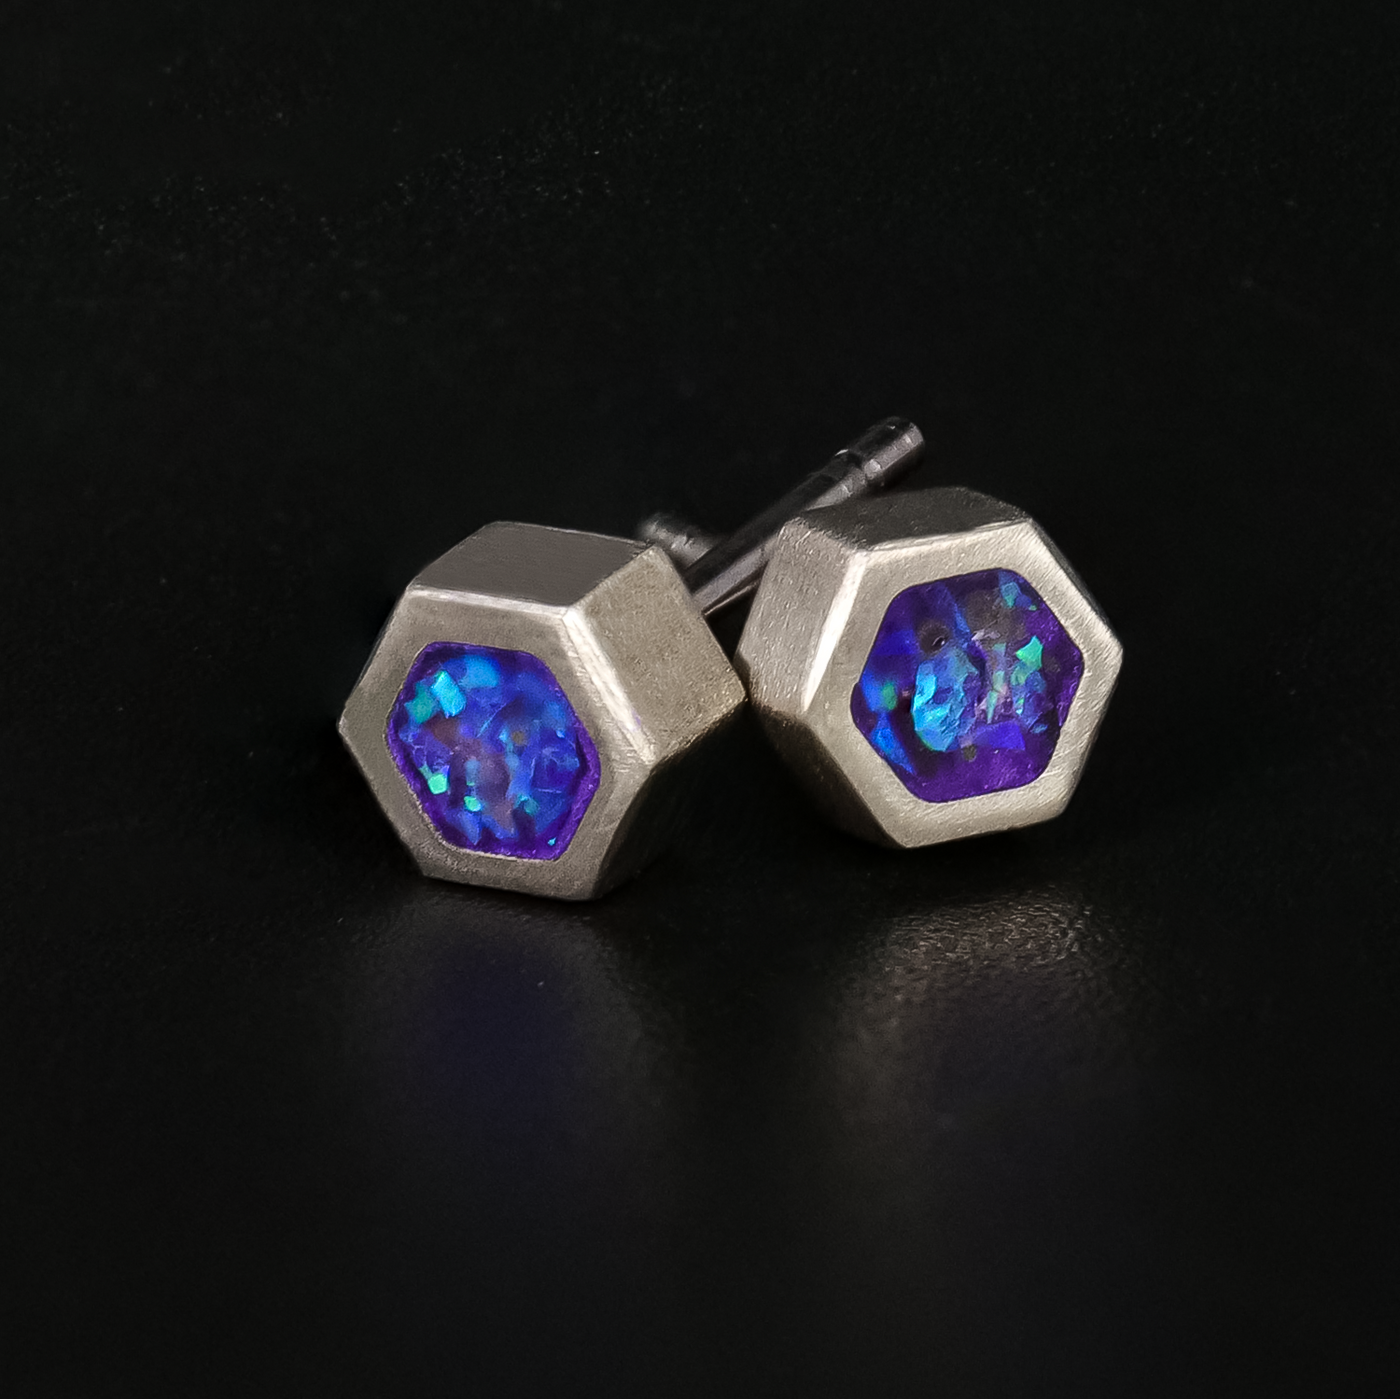 Lavender Opal Glowstone Earrings - Patrick Adair Designs